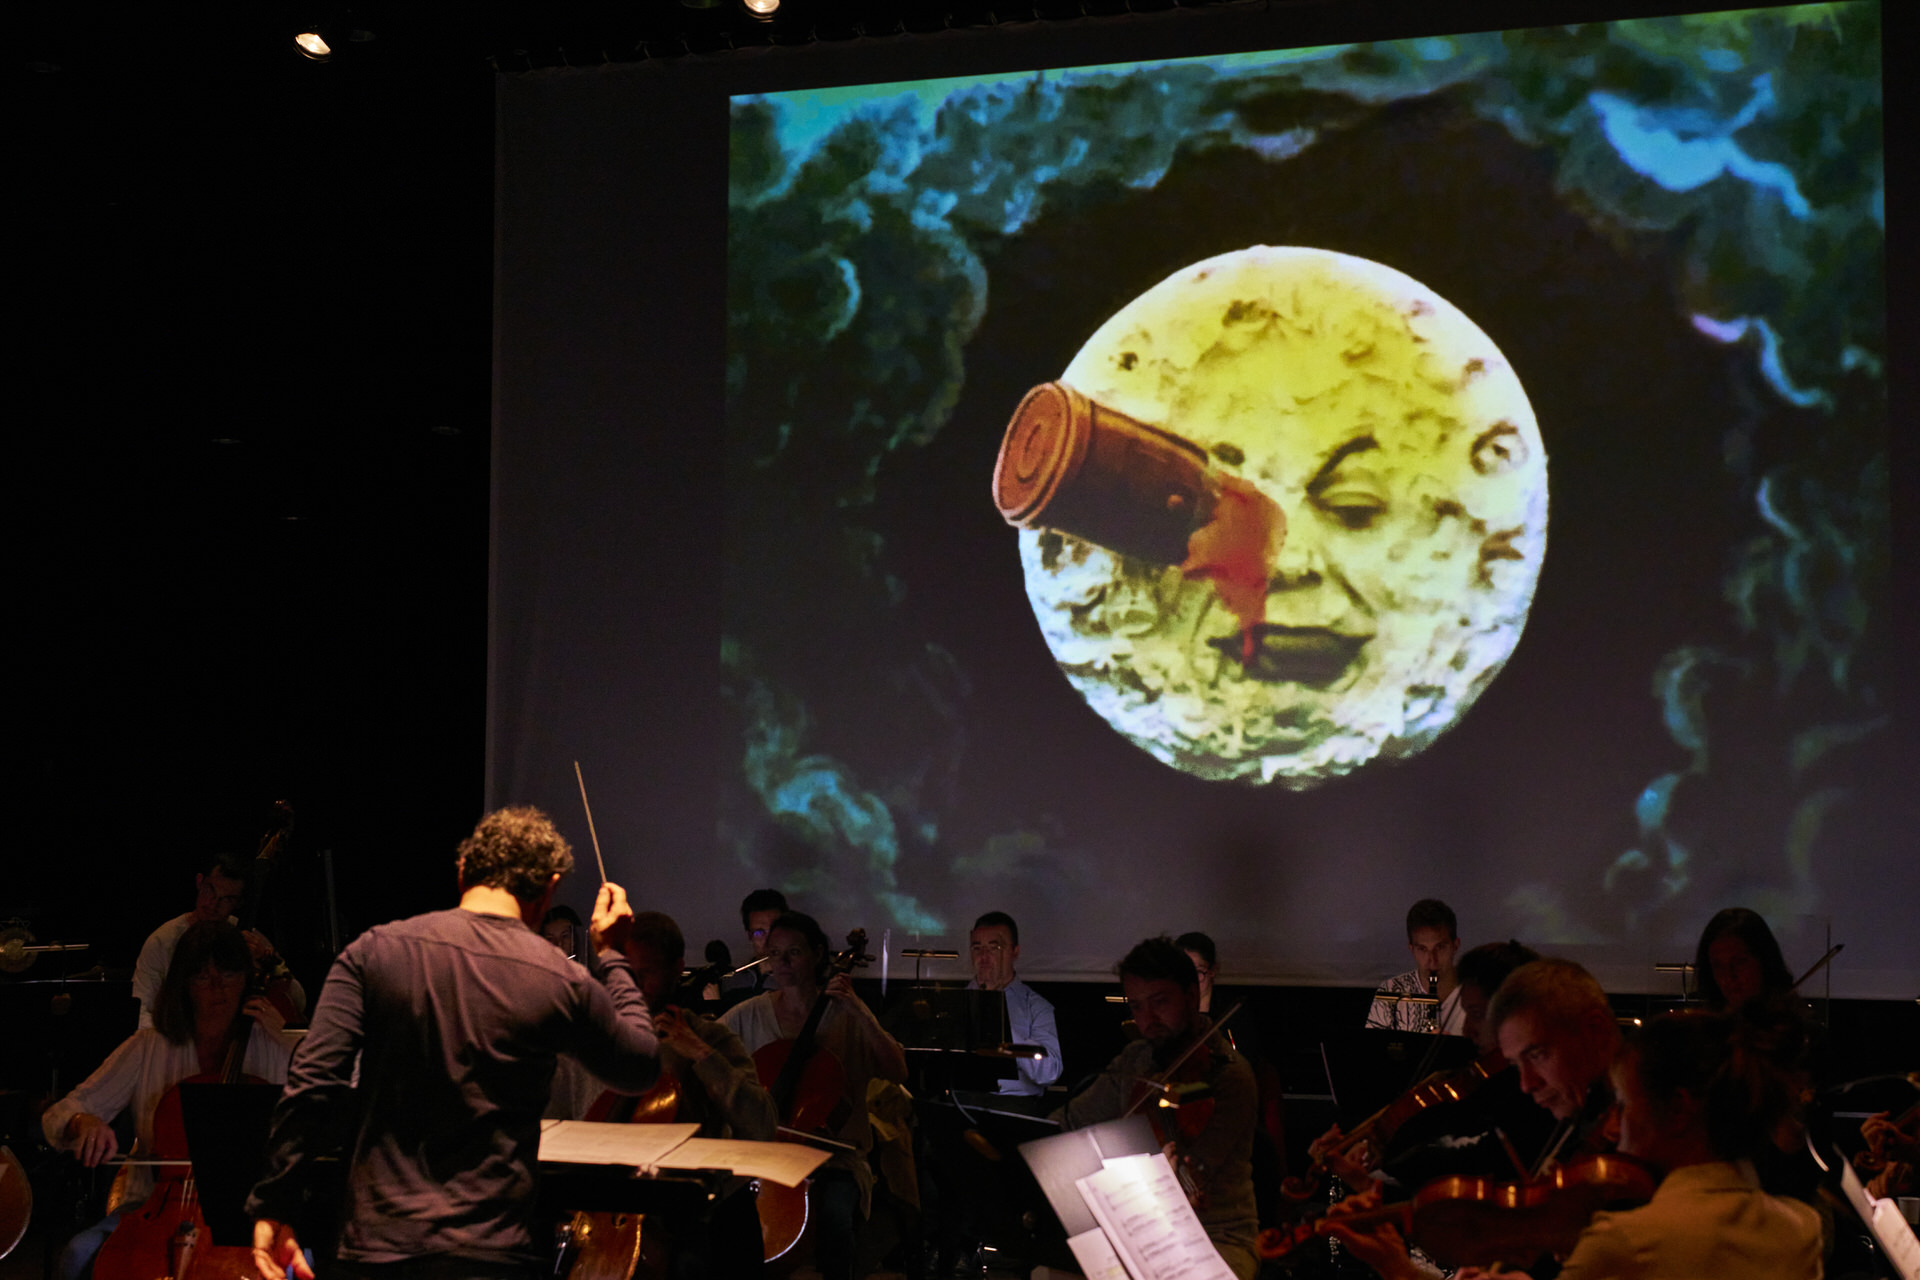 L’Orchestre National de Cannes dirigé par Benjamin Levy interprète en ciné-concert la partition musicale originale d’Alexis Savelief pour le film muet “Le Voyage dans la Lune”, de Georges Méliès